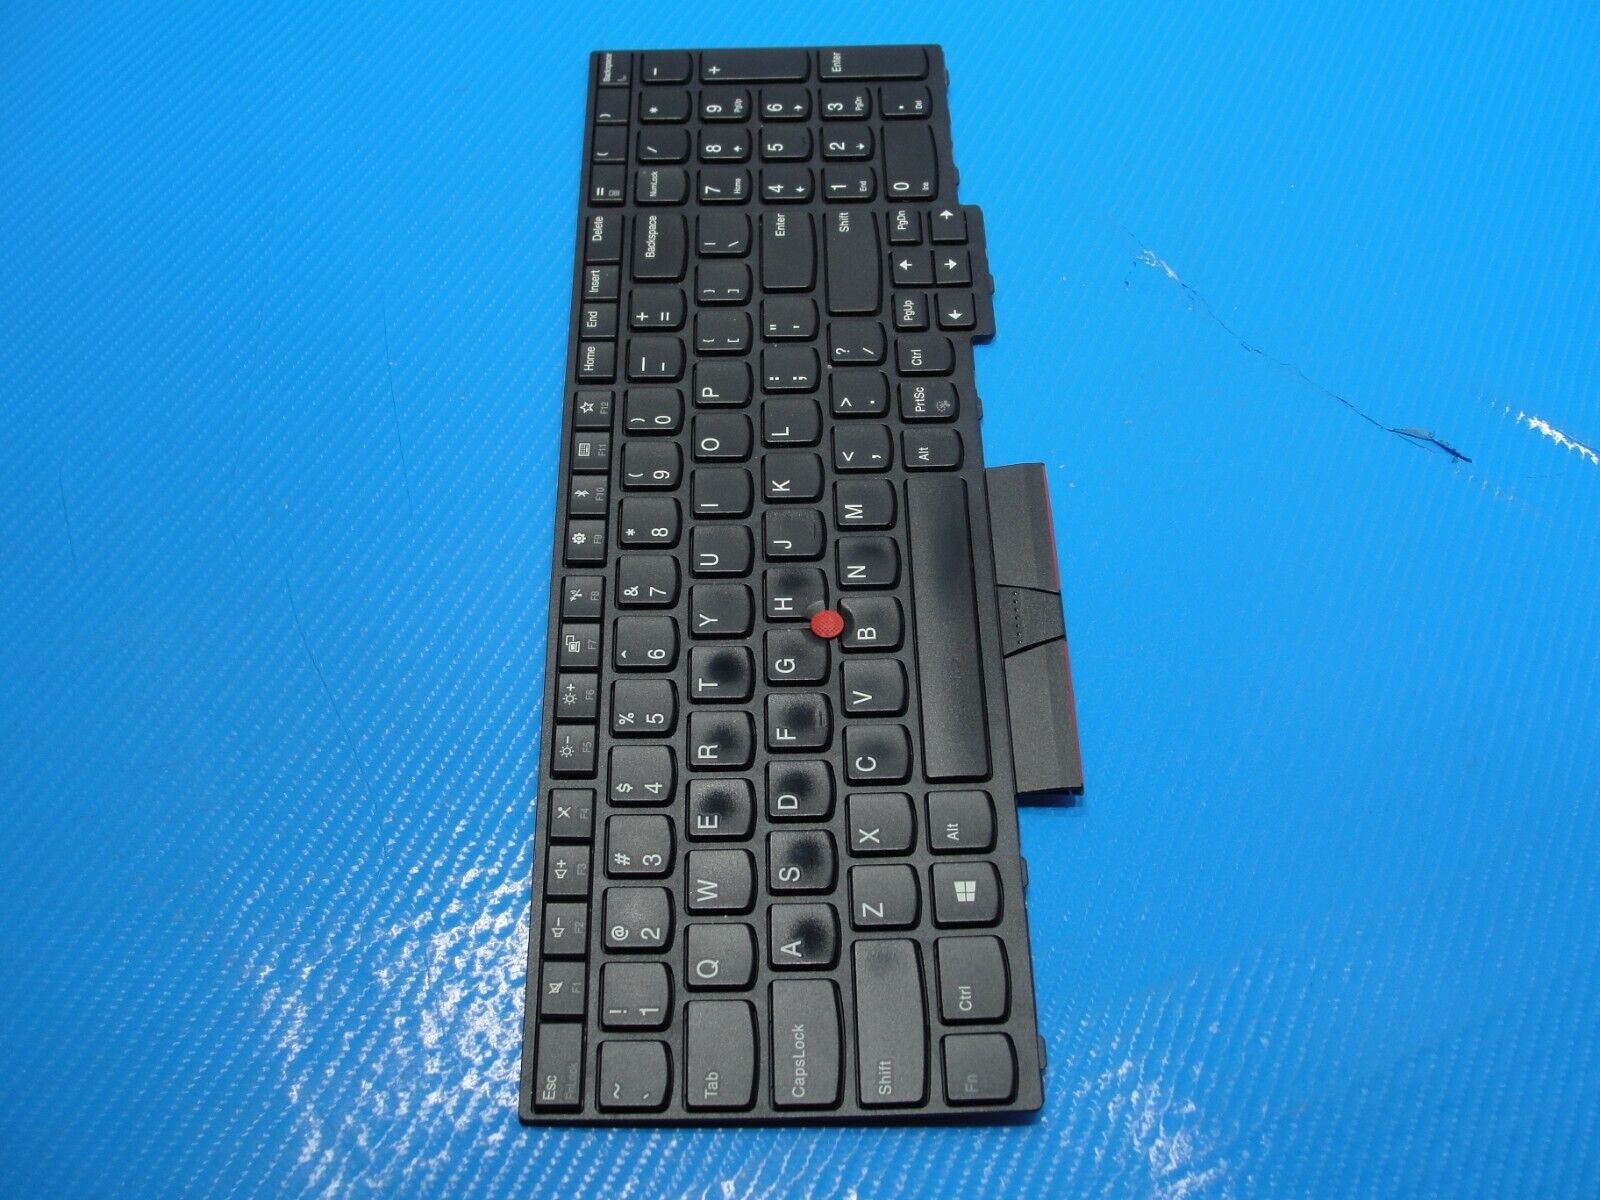 Lenovo ThinkPad E590 15.6